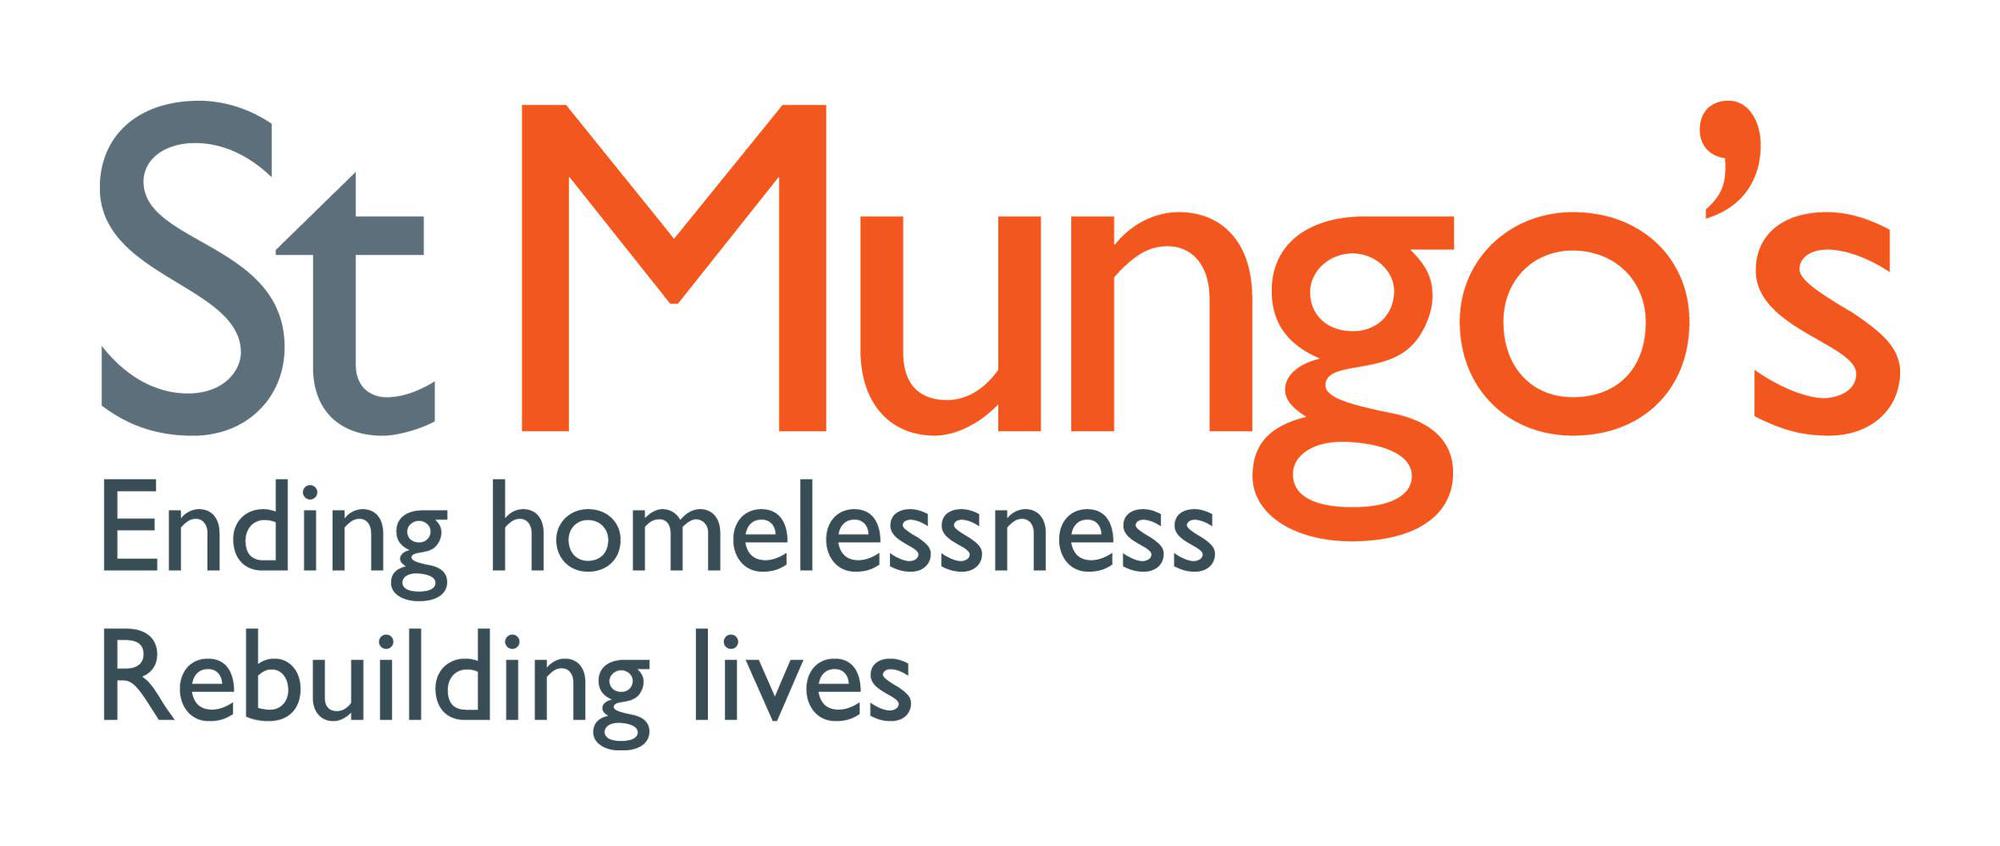 St Mungo's logo